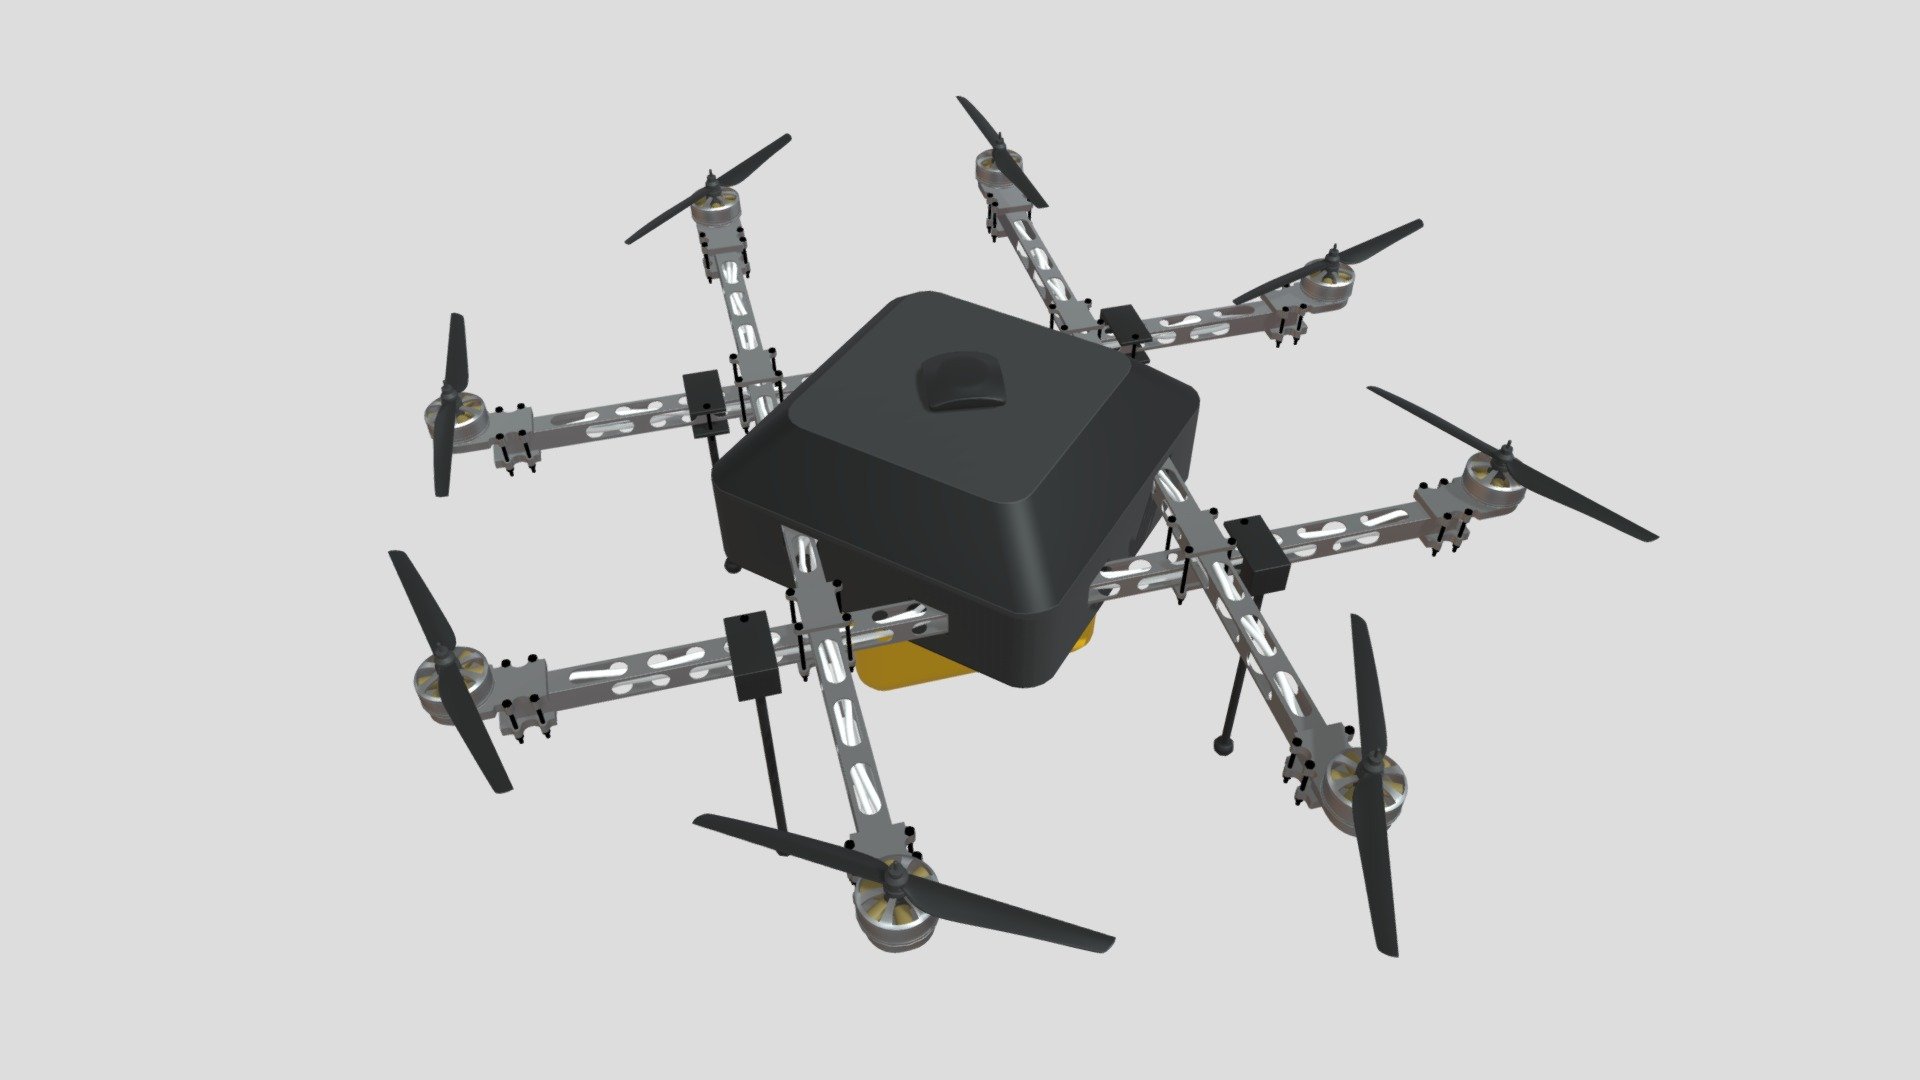 亚马逊 Prime无人机
amazon
drone - 亚马逊 Prime无人机 - Buy Royalty Free 3D model by Jackey&Design (@1394725324zhang) 3d model